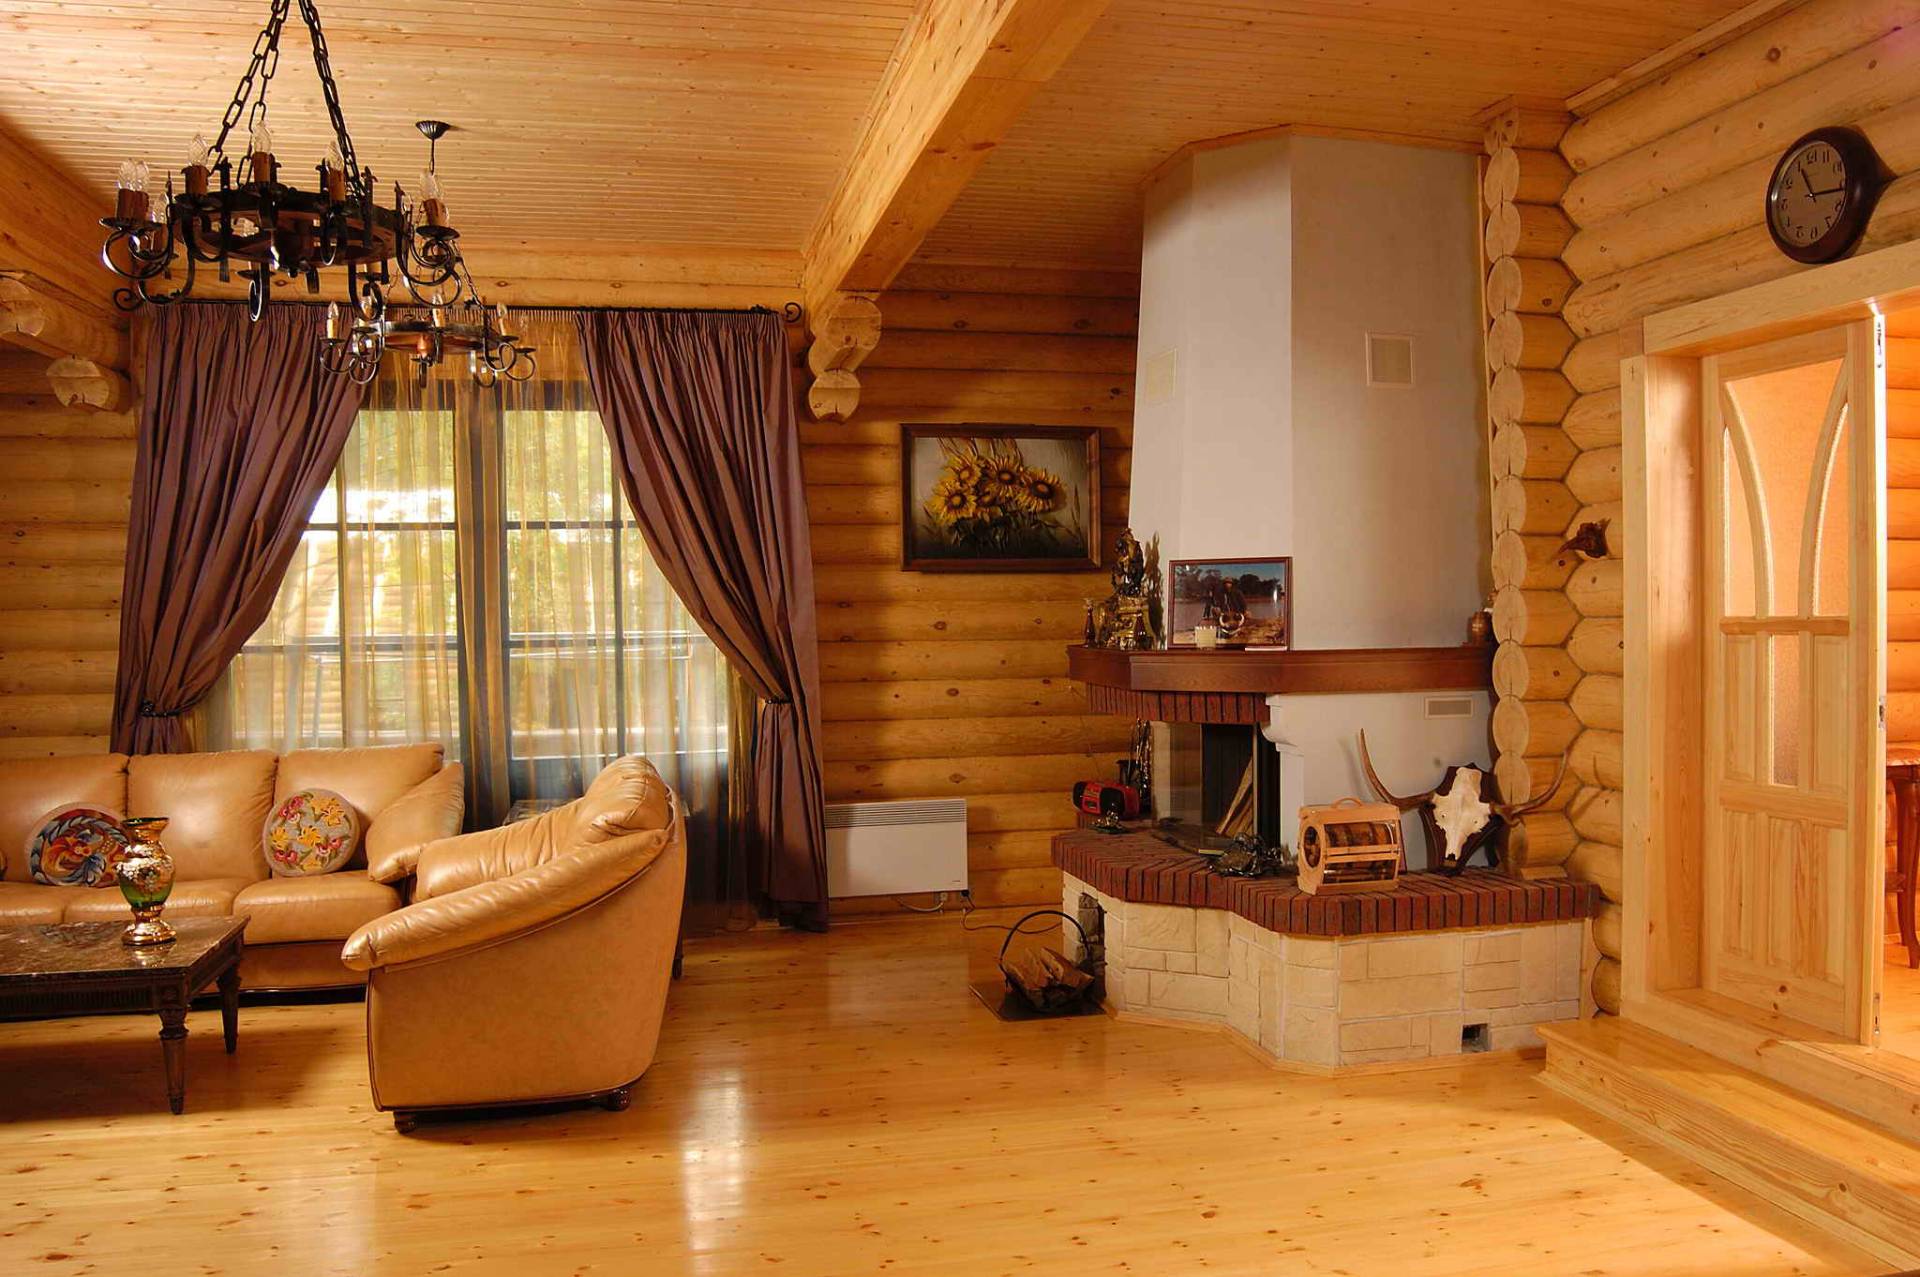 Дизайн интерьера деревянного дома > 60 фото-идей как обустроить интерьер дома из дерева